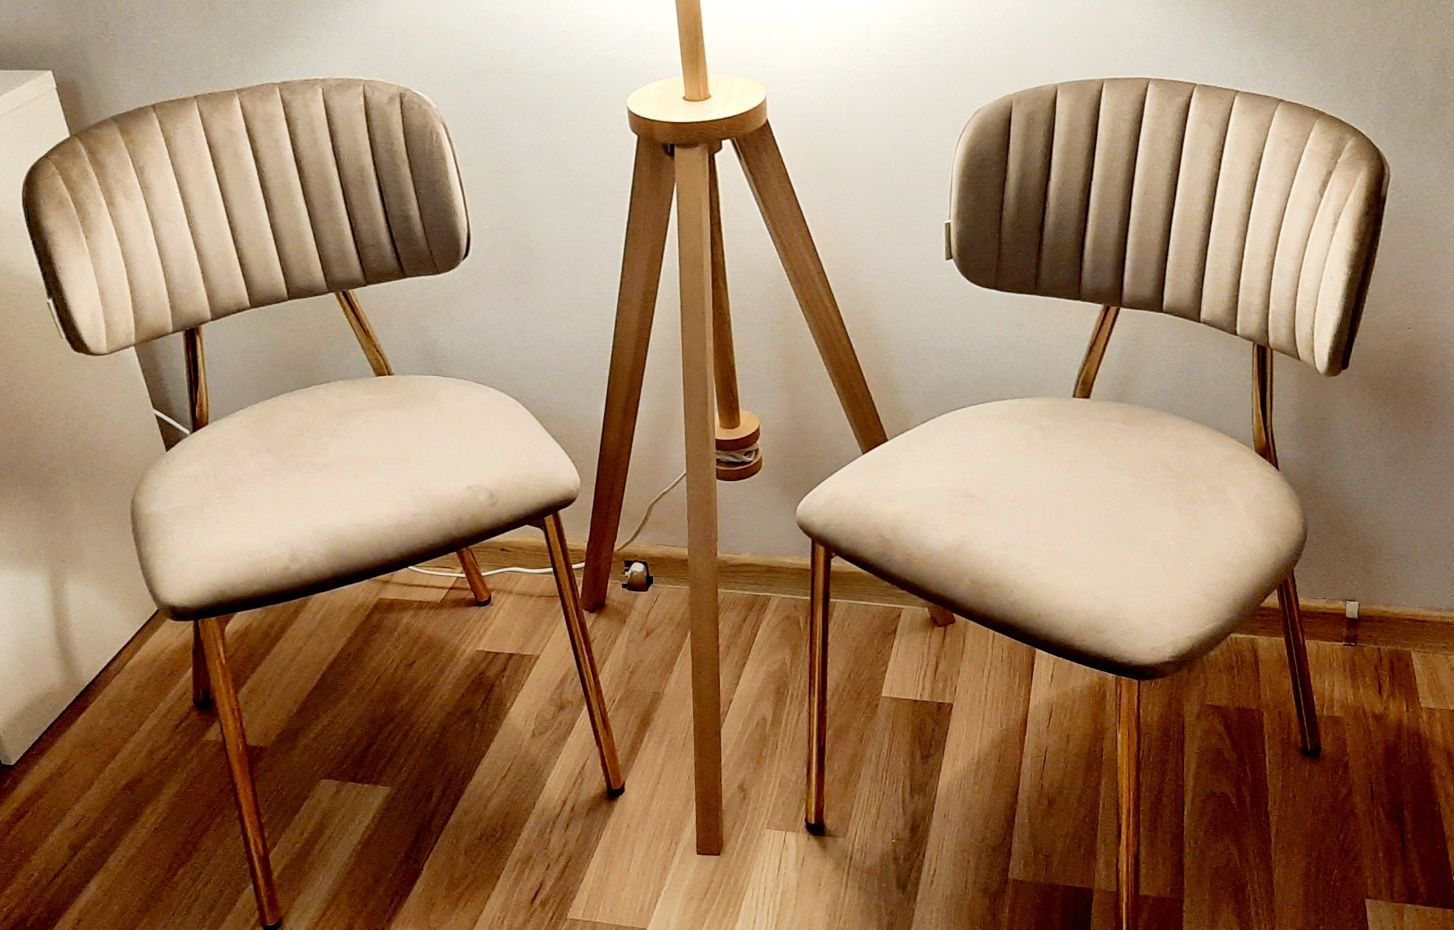 In style kayoom krzesła nowe 2 szt kian 100 welur krzesło